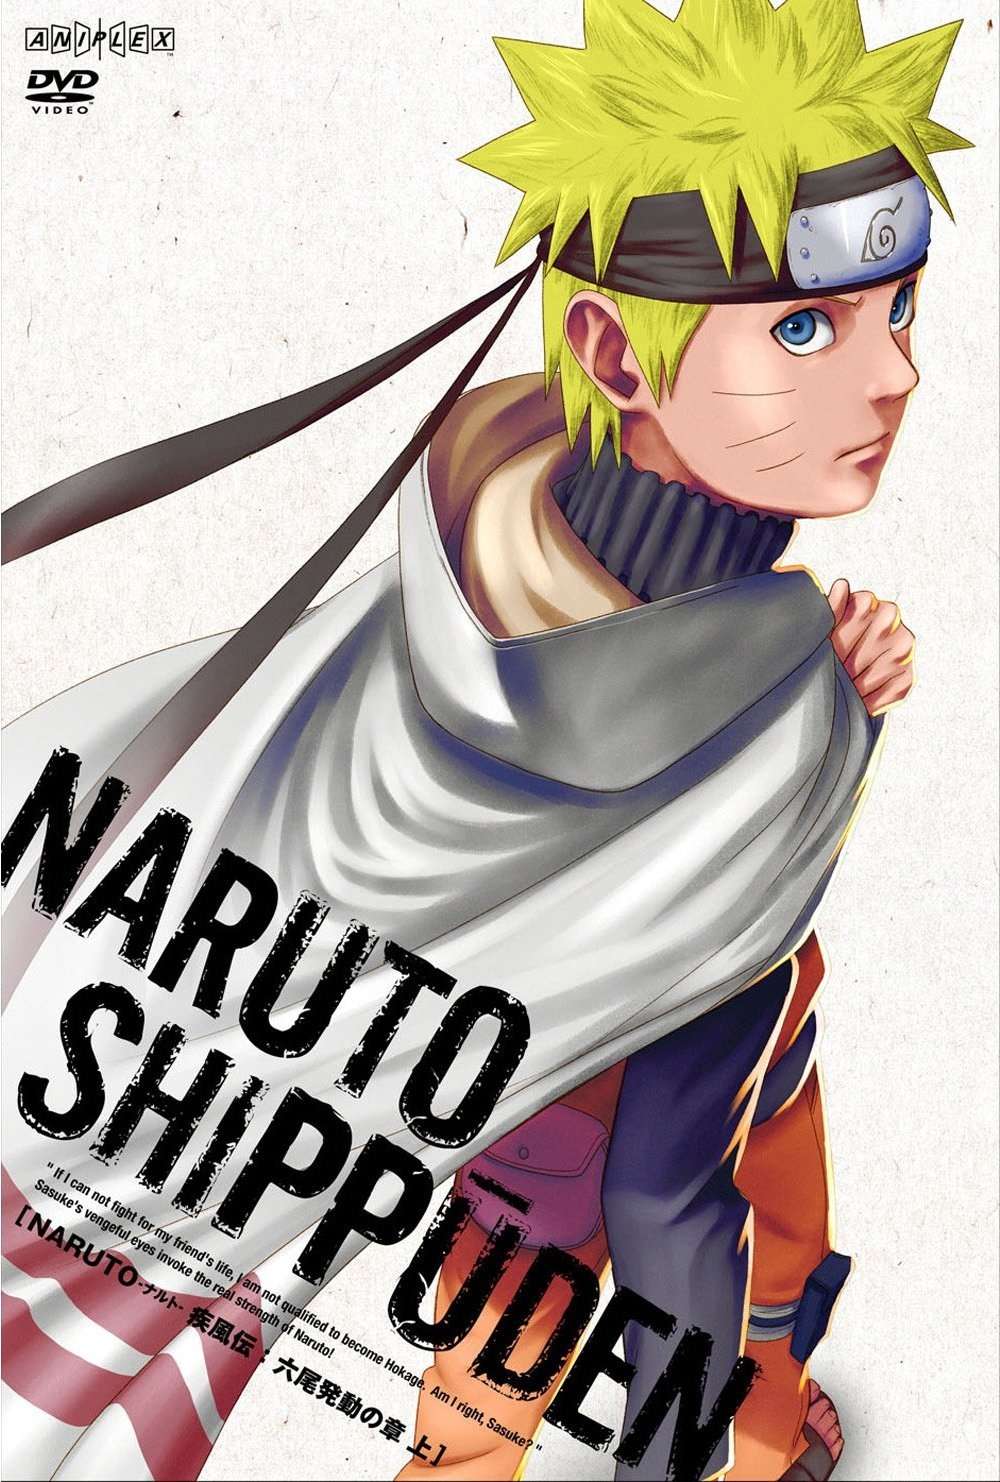 Naruto Shippuuden 9. Sezon Tüm Bölümler DVBRip x264 Türkçe Altyazılı Tek Link indir